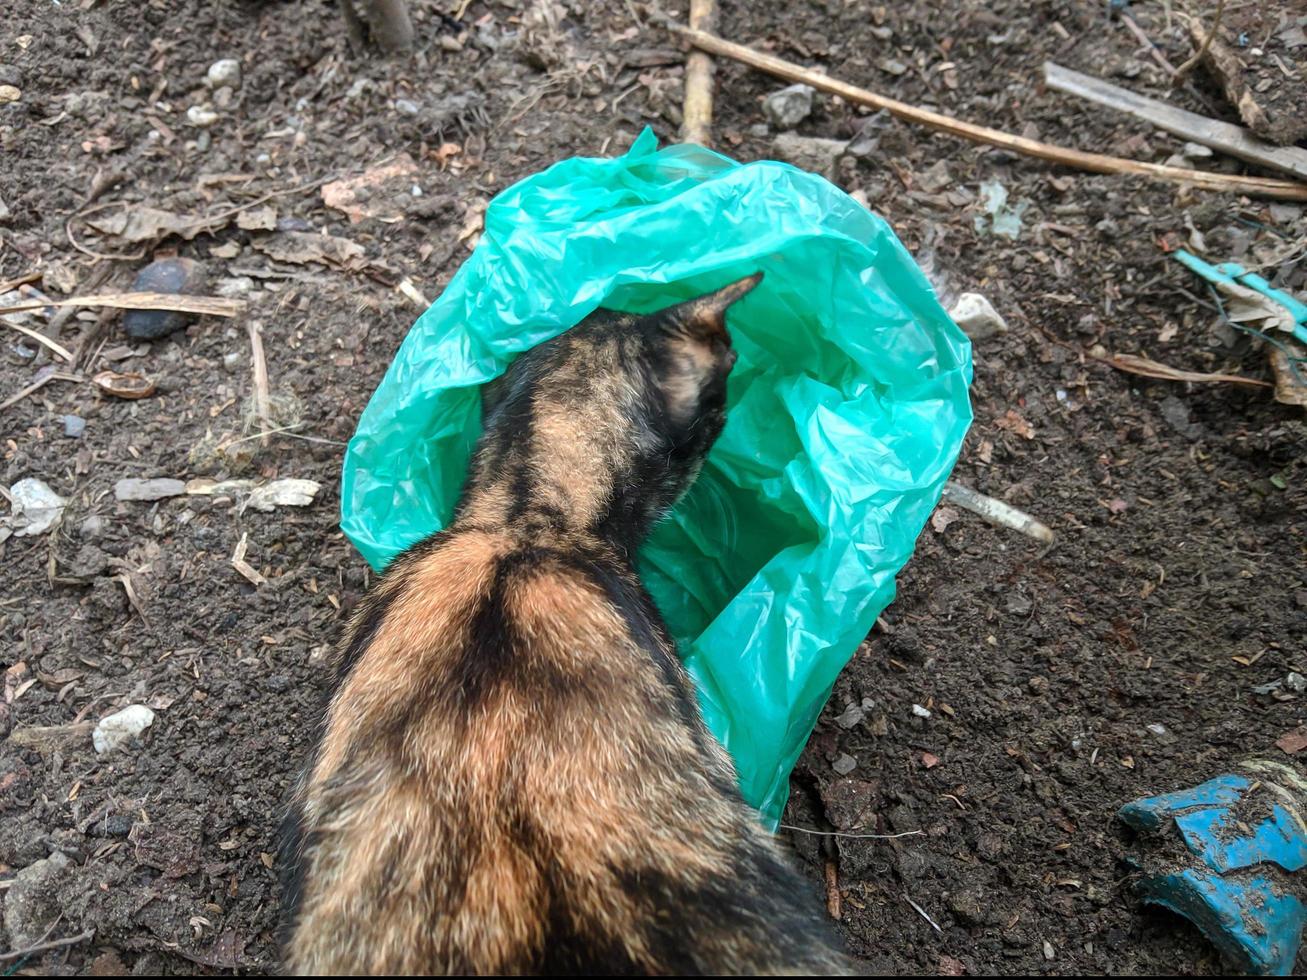 a strisce gatto guardare per cibo nel plastica borse quello siamo gettato con noncuranza foto